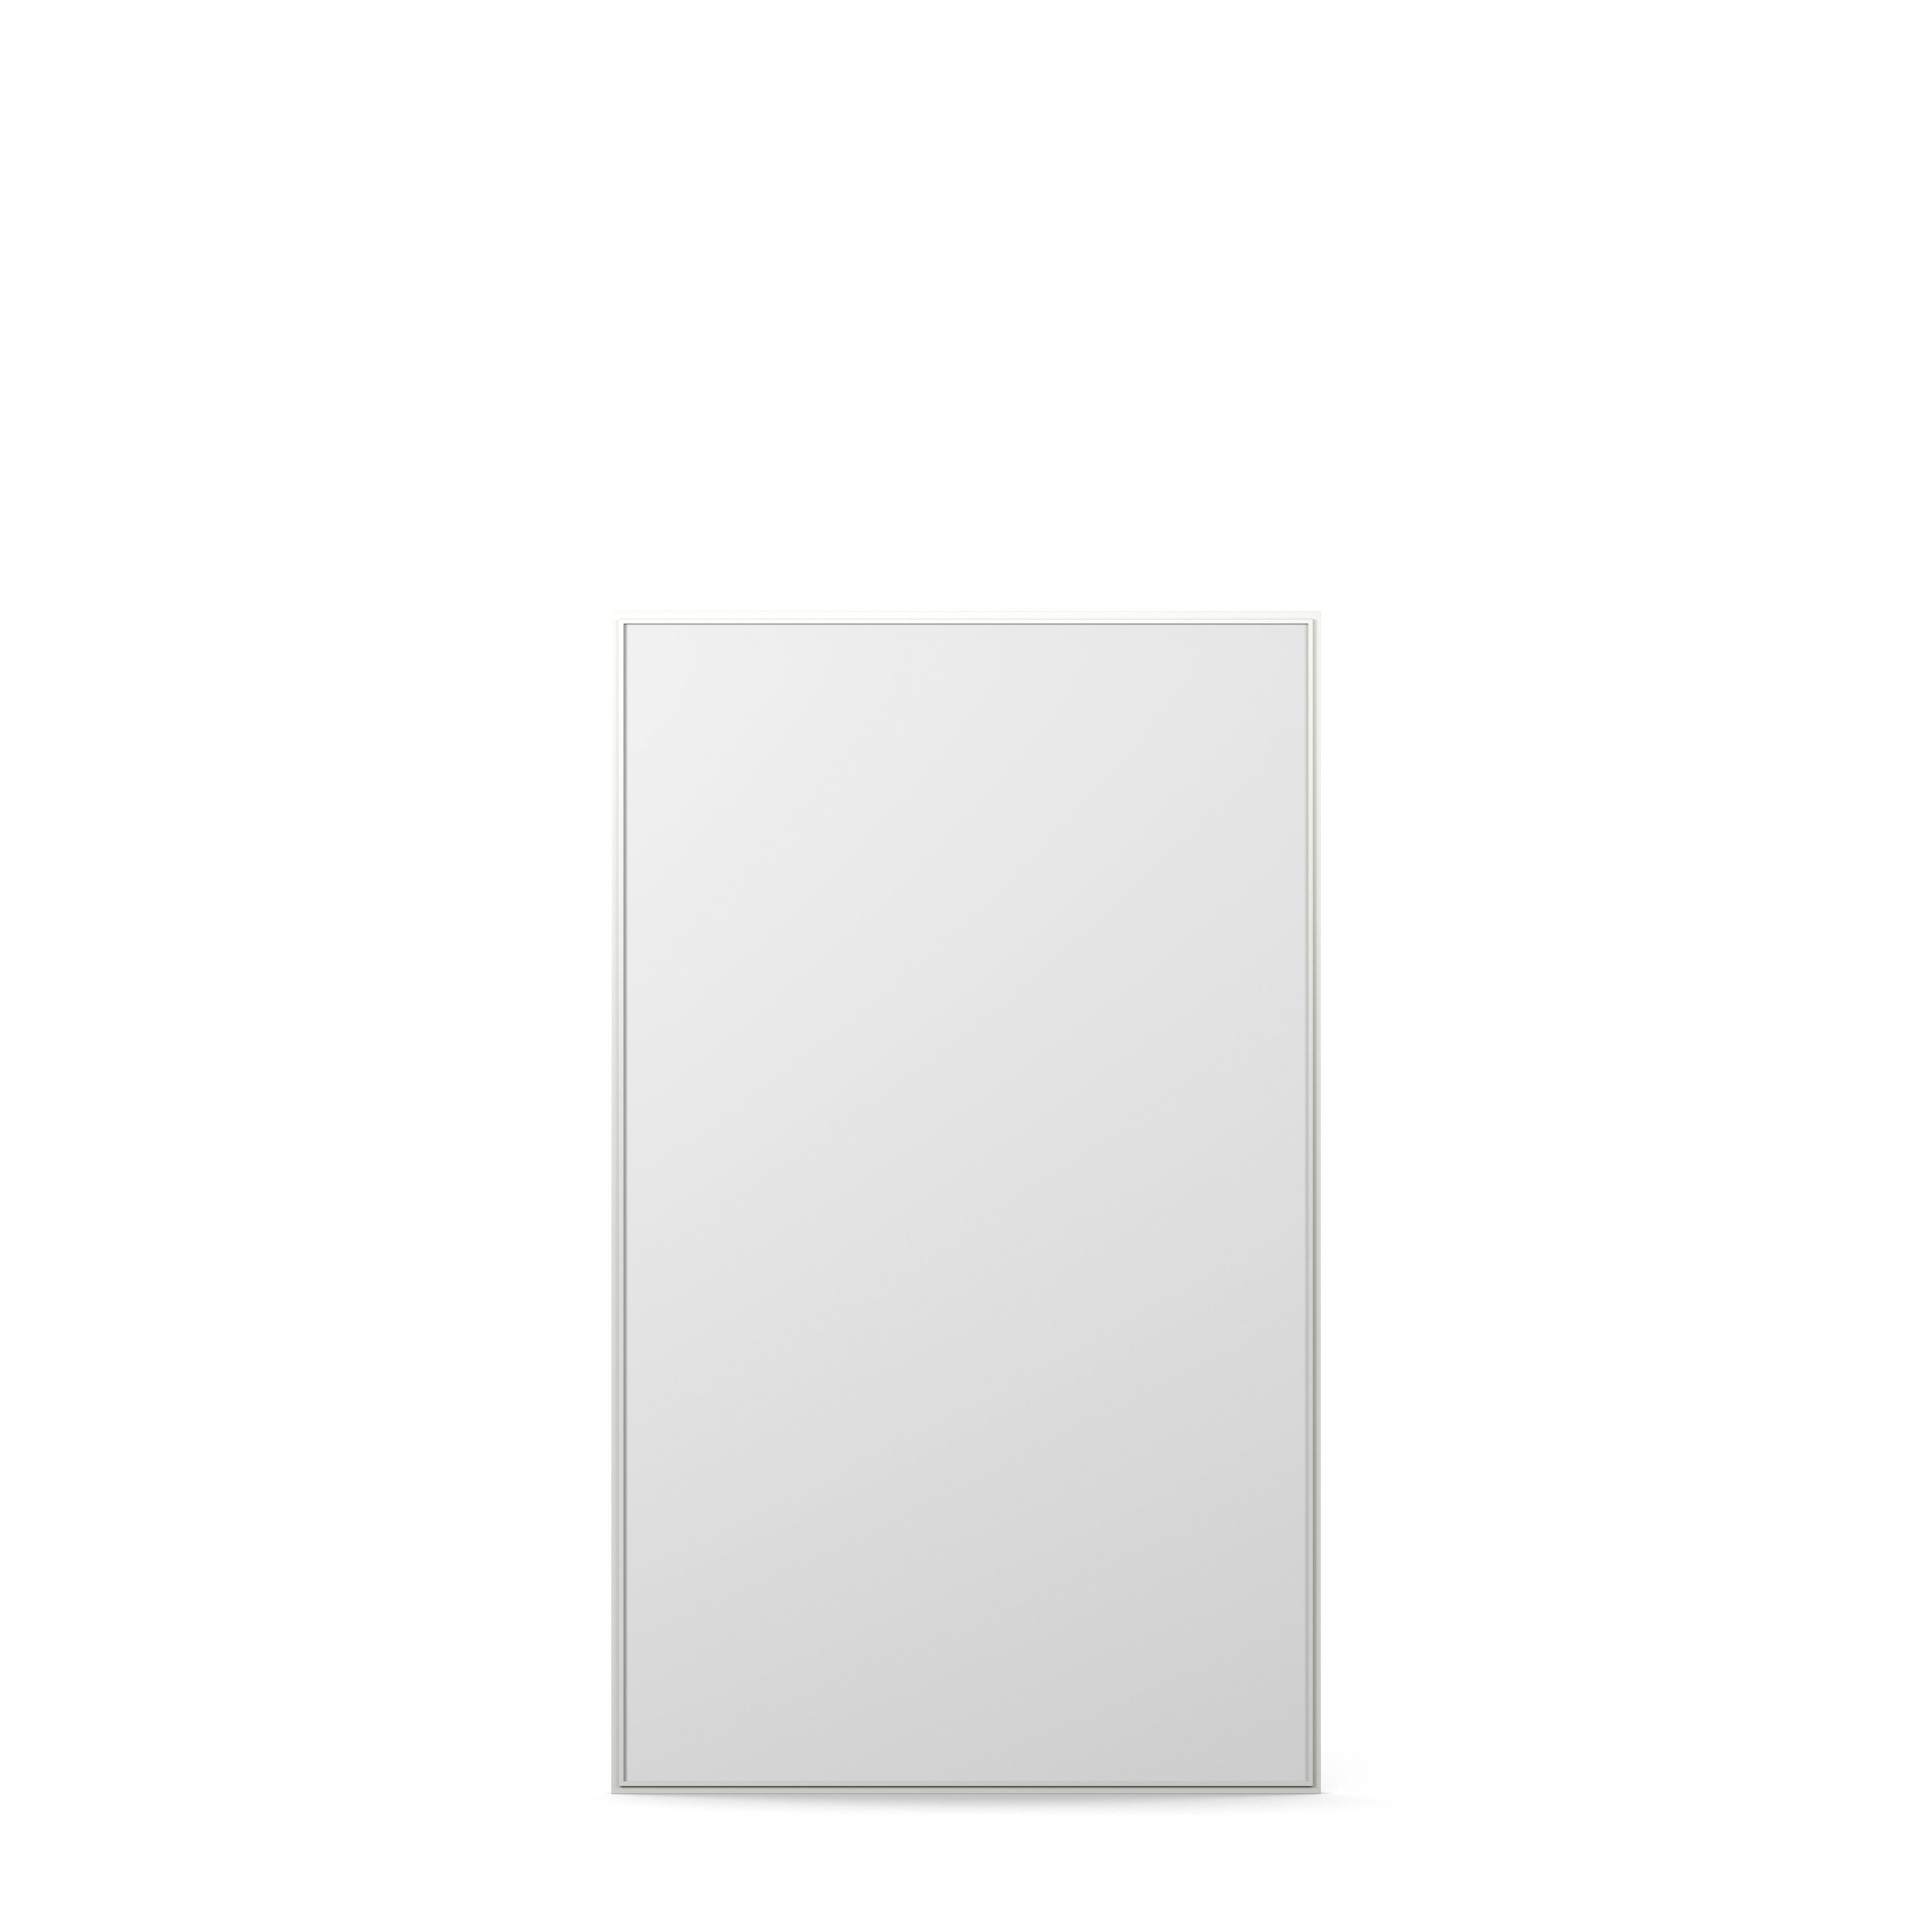 Englesson Edge White Cube Spegel Rektangulär 831D #färg_Edge White #Colour_Edge White